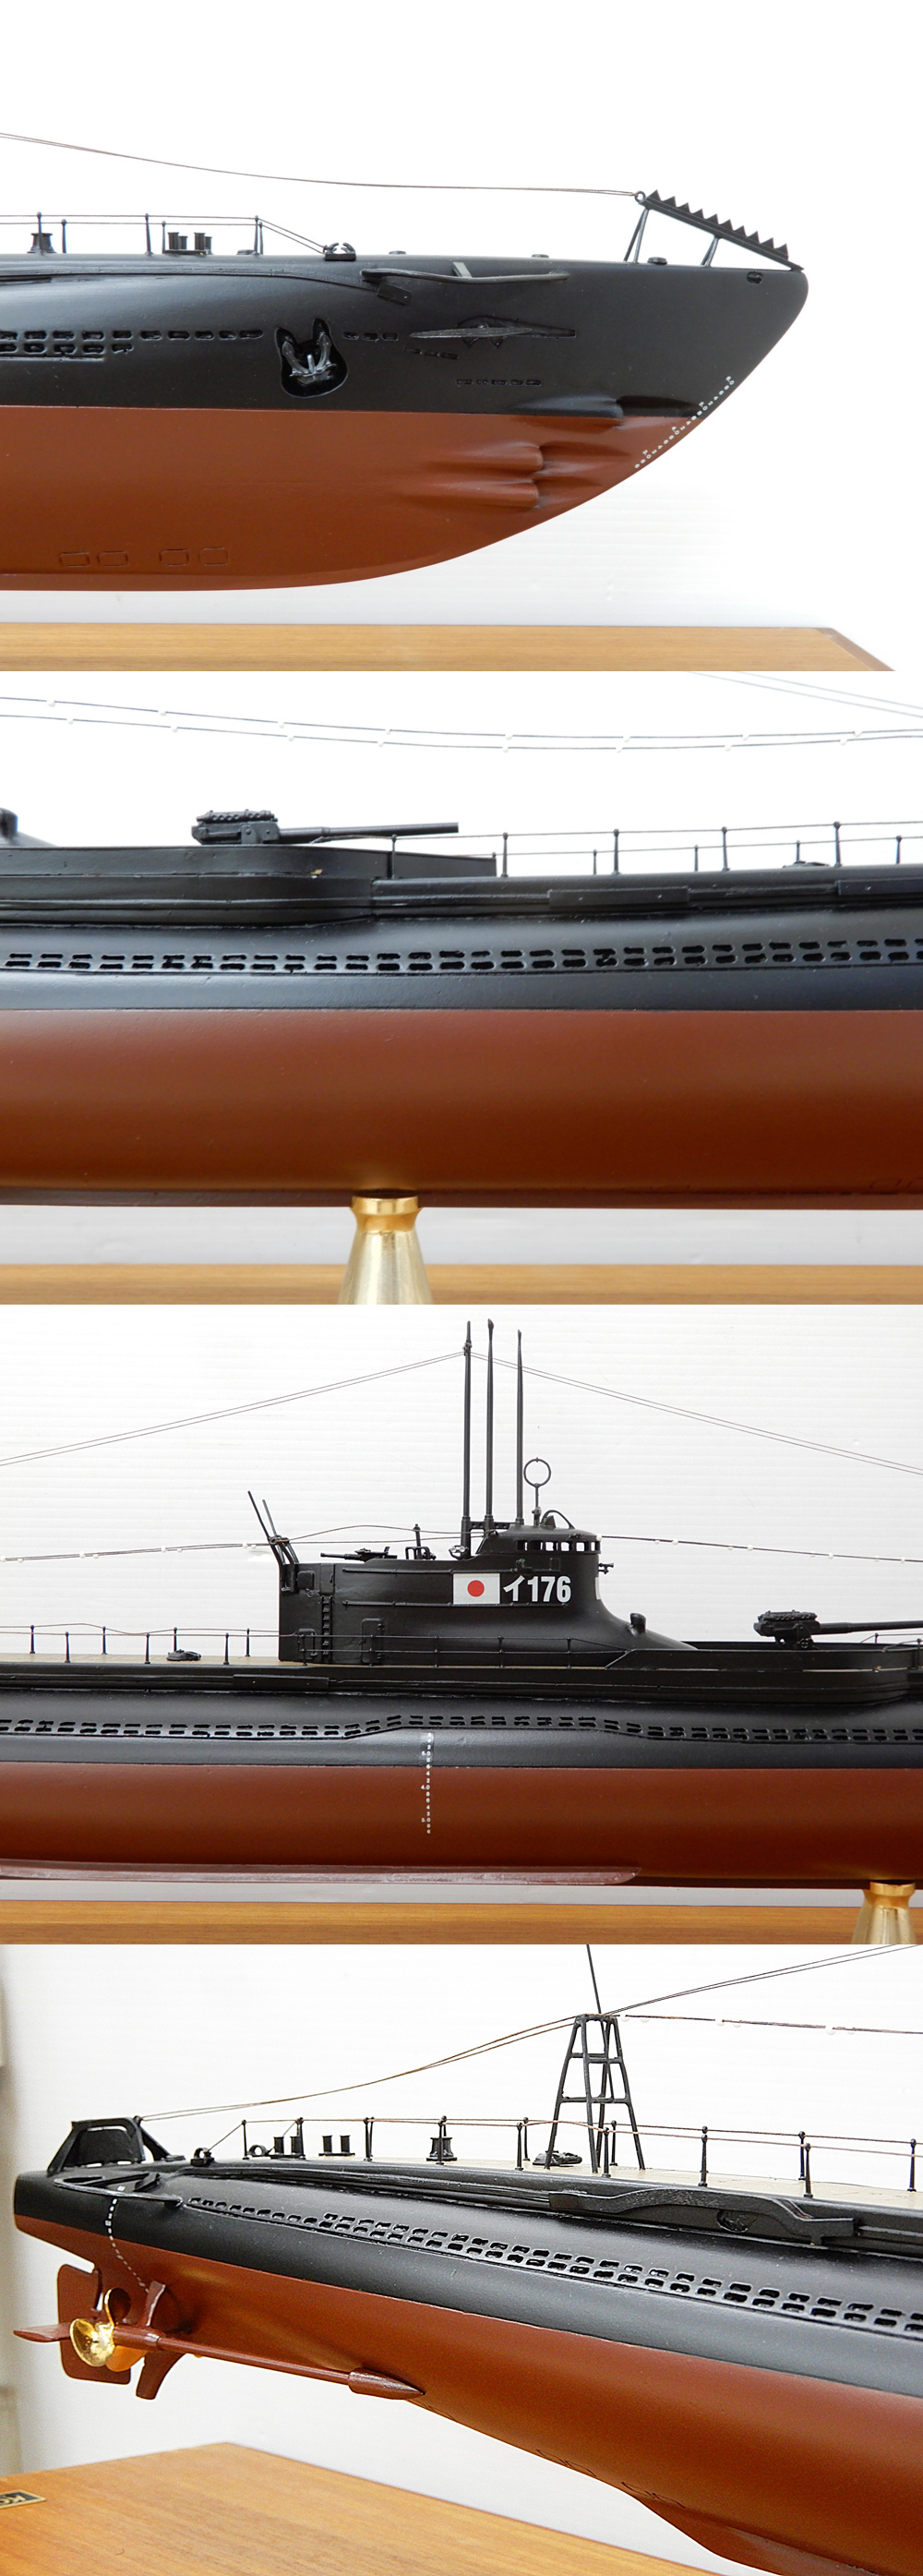 購入銀座◆◎小西製作所 日本海軍一等潜水艦海大？ 型 イ176 模型 1/100 全長107cm 大型模型 ケース付き 潜水艦模型 完成品